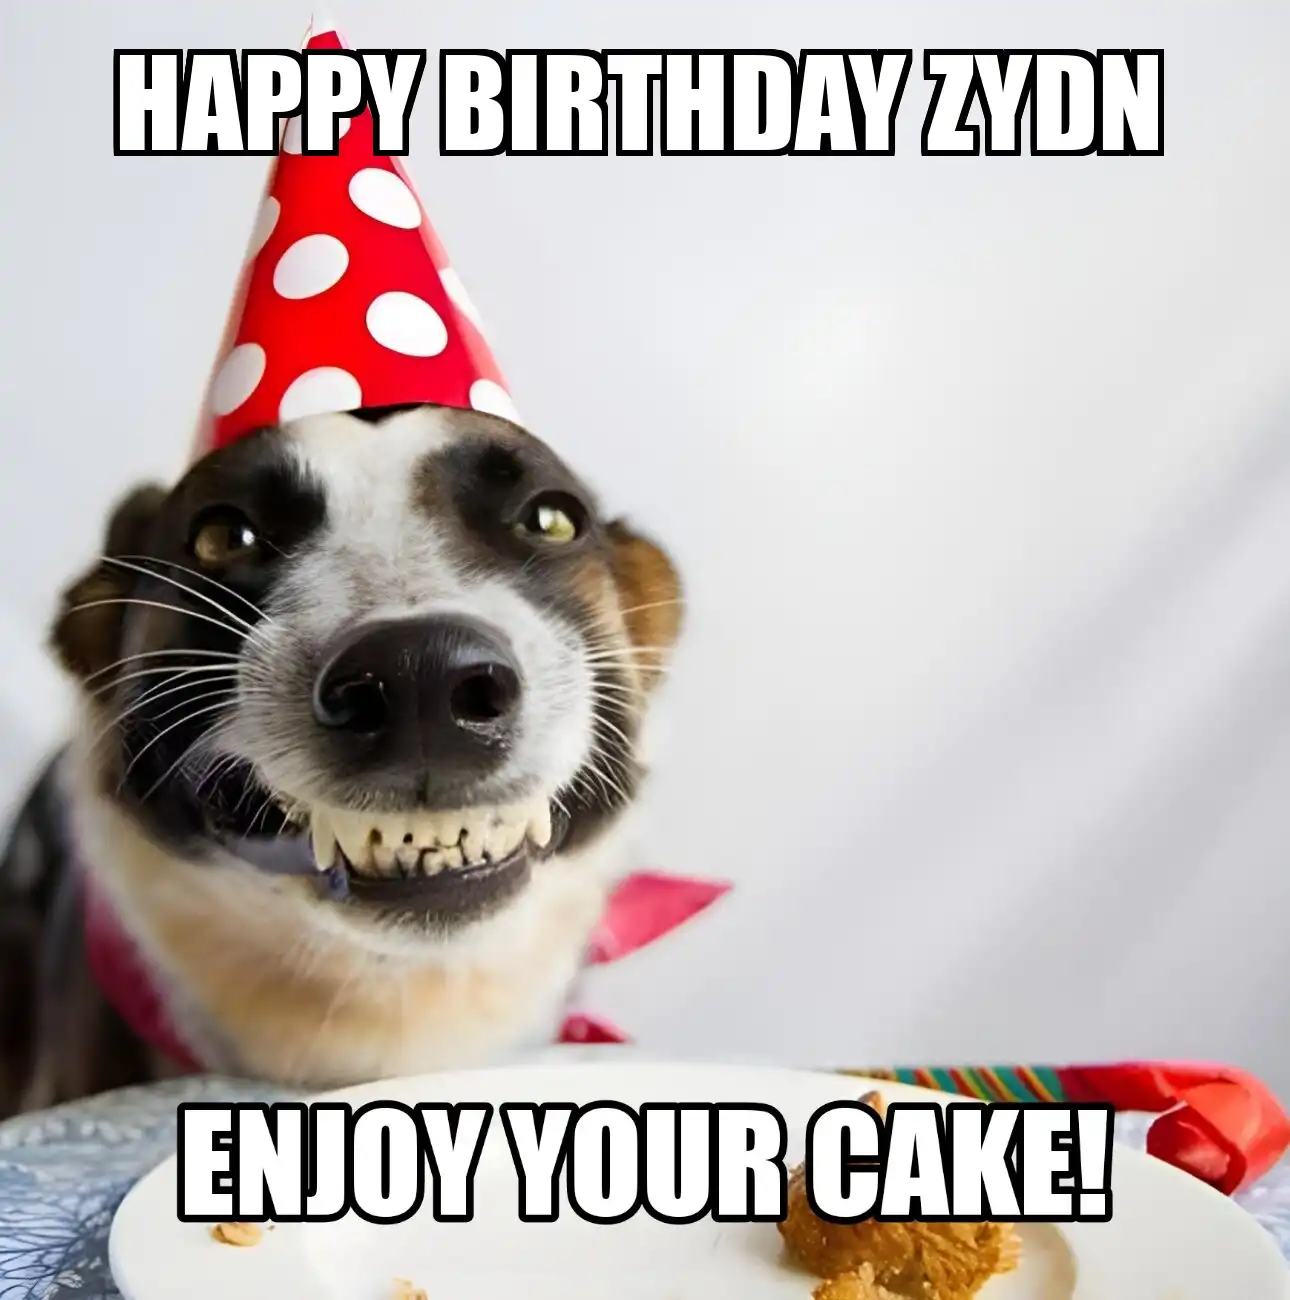 Happy Birthday Zydn Enjoy Your Cake Dog Meme